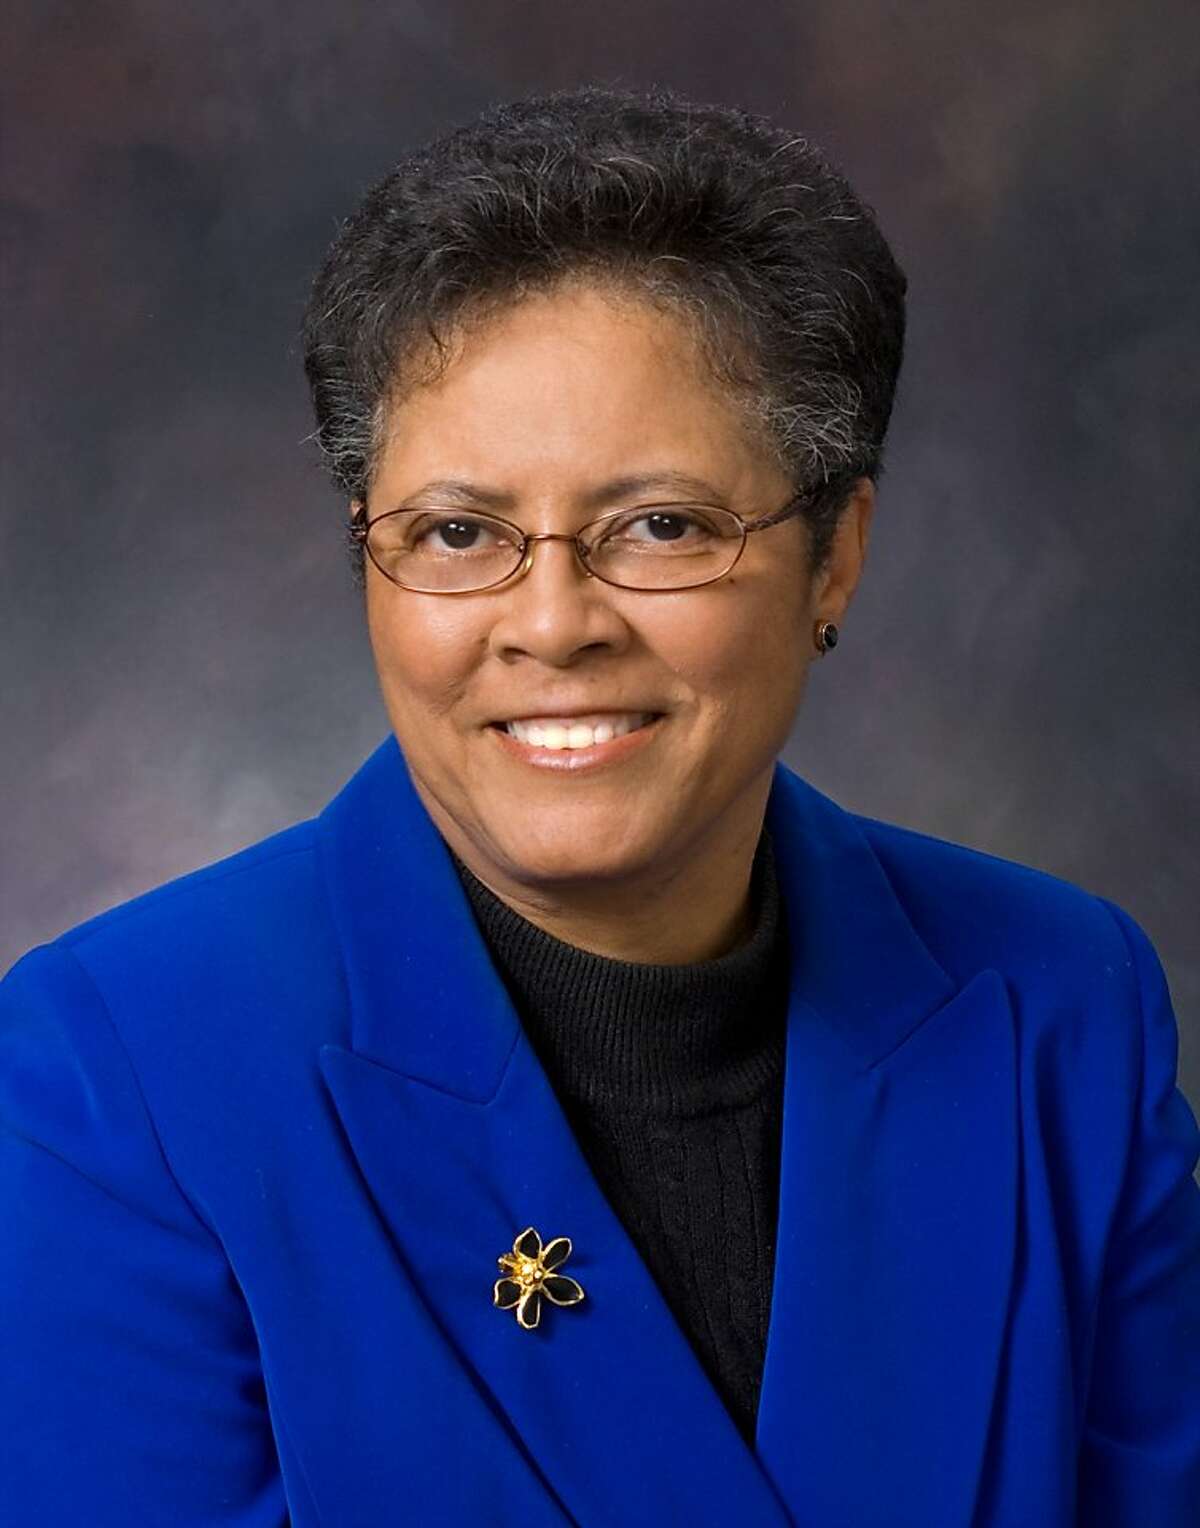 Dr. Thelma Scott-Skillman